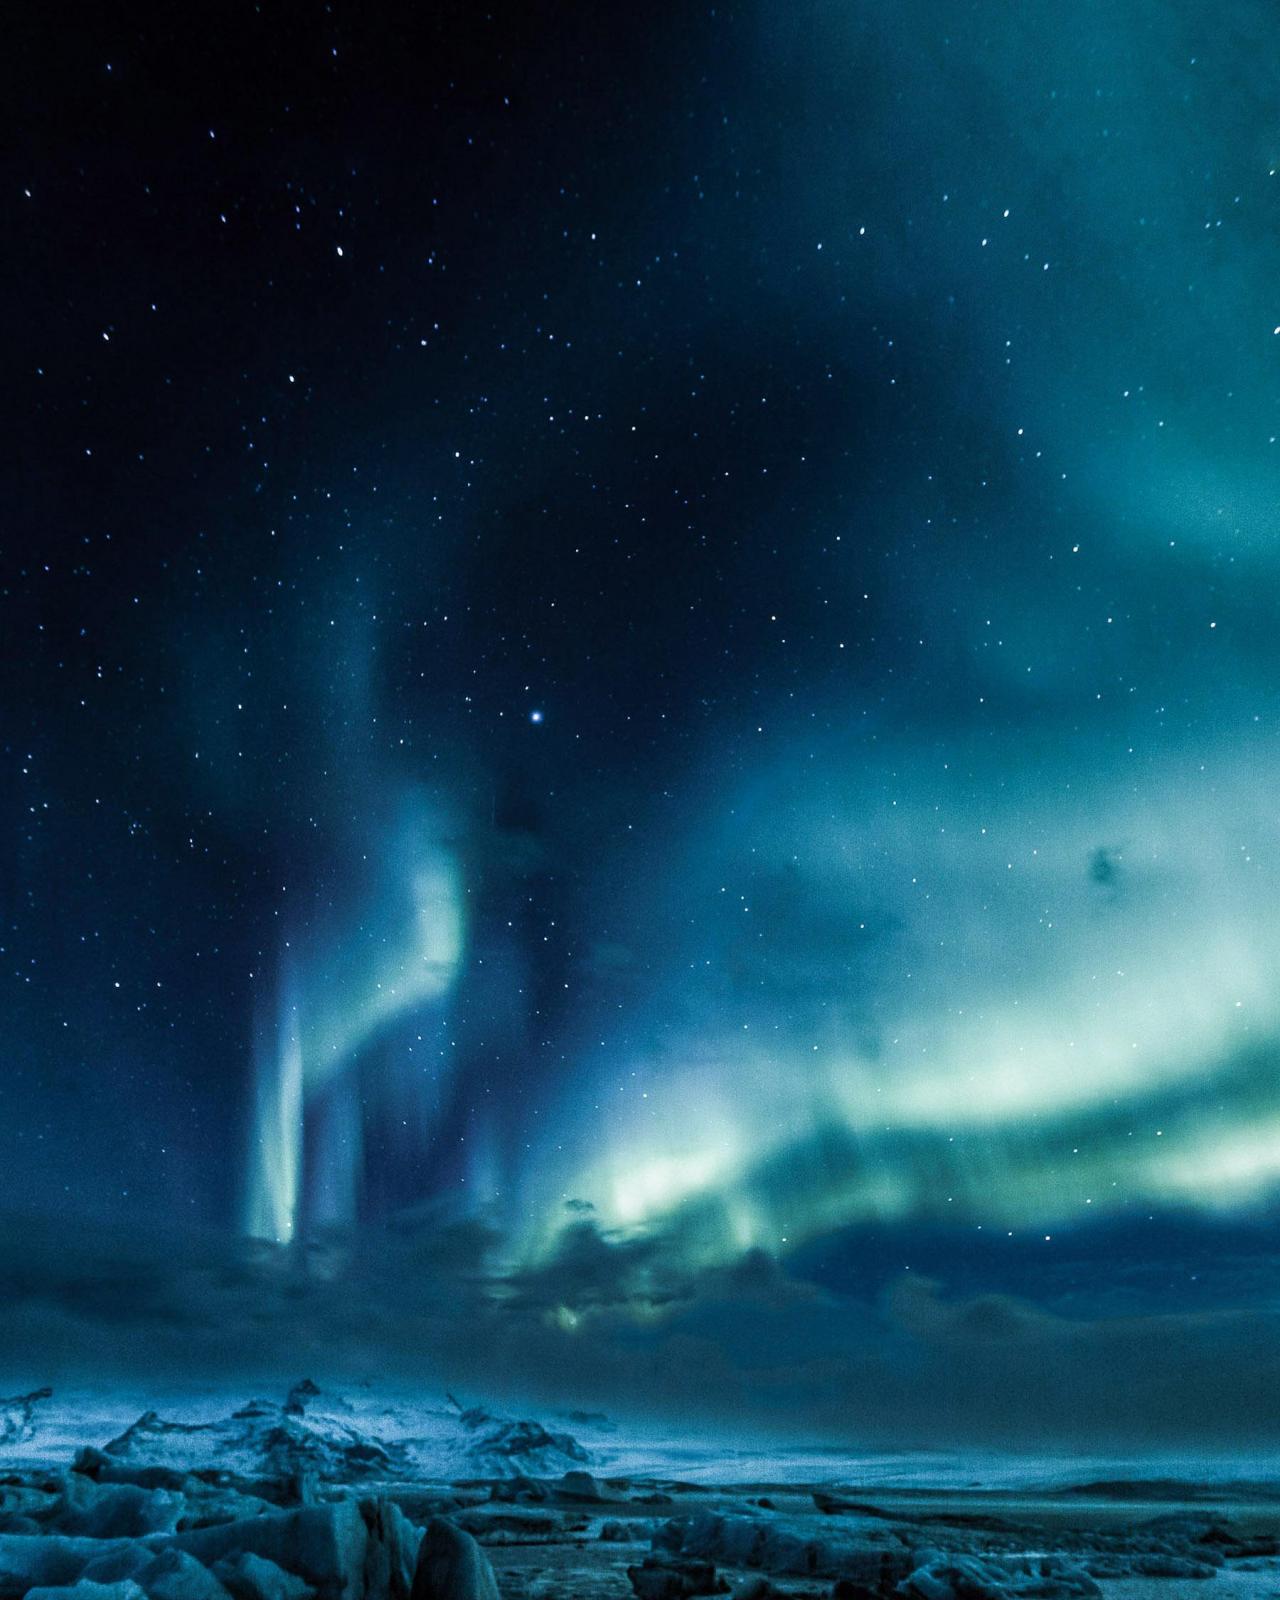 amazinglybeautifulphotography:
“Aurora Borealis over the Jökulsárlón Ice Lagoon in Iceland [1800x2250] [OC] - Author: jetclarke on reddit
”